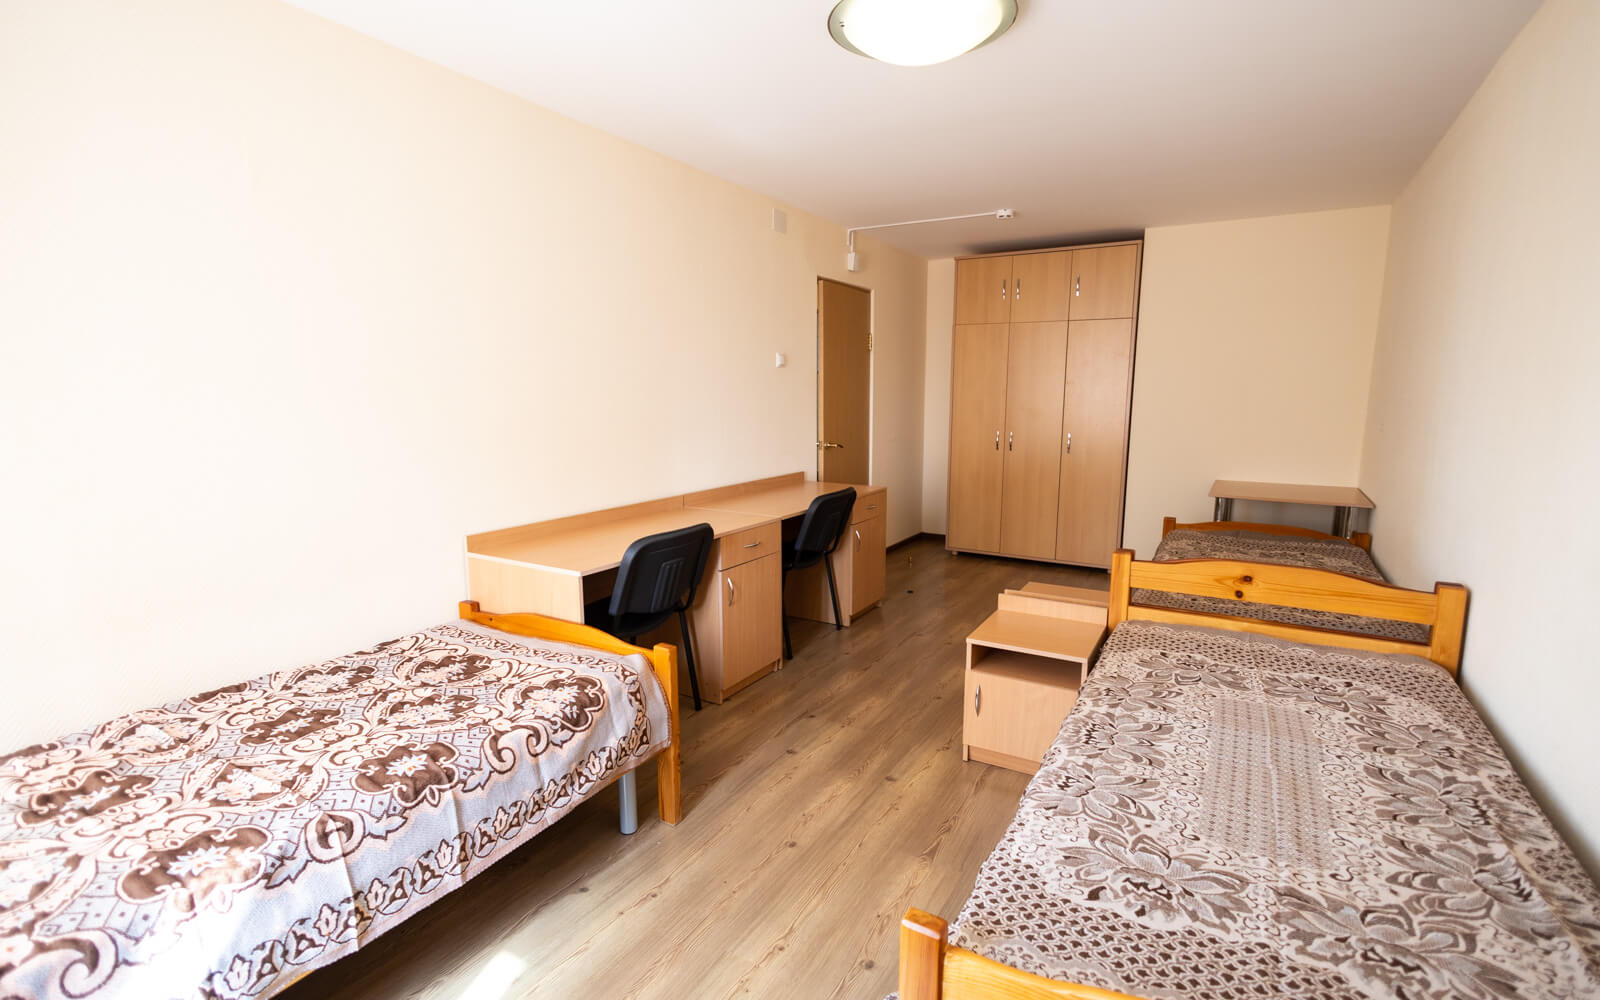 Комнаты в общежитиях оборудованны всем необходимым для комфортного проживания студентов.